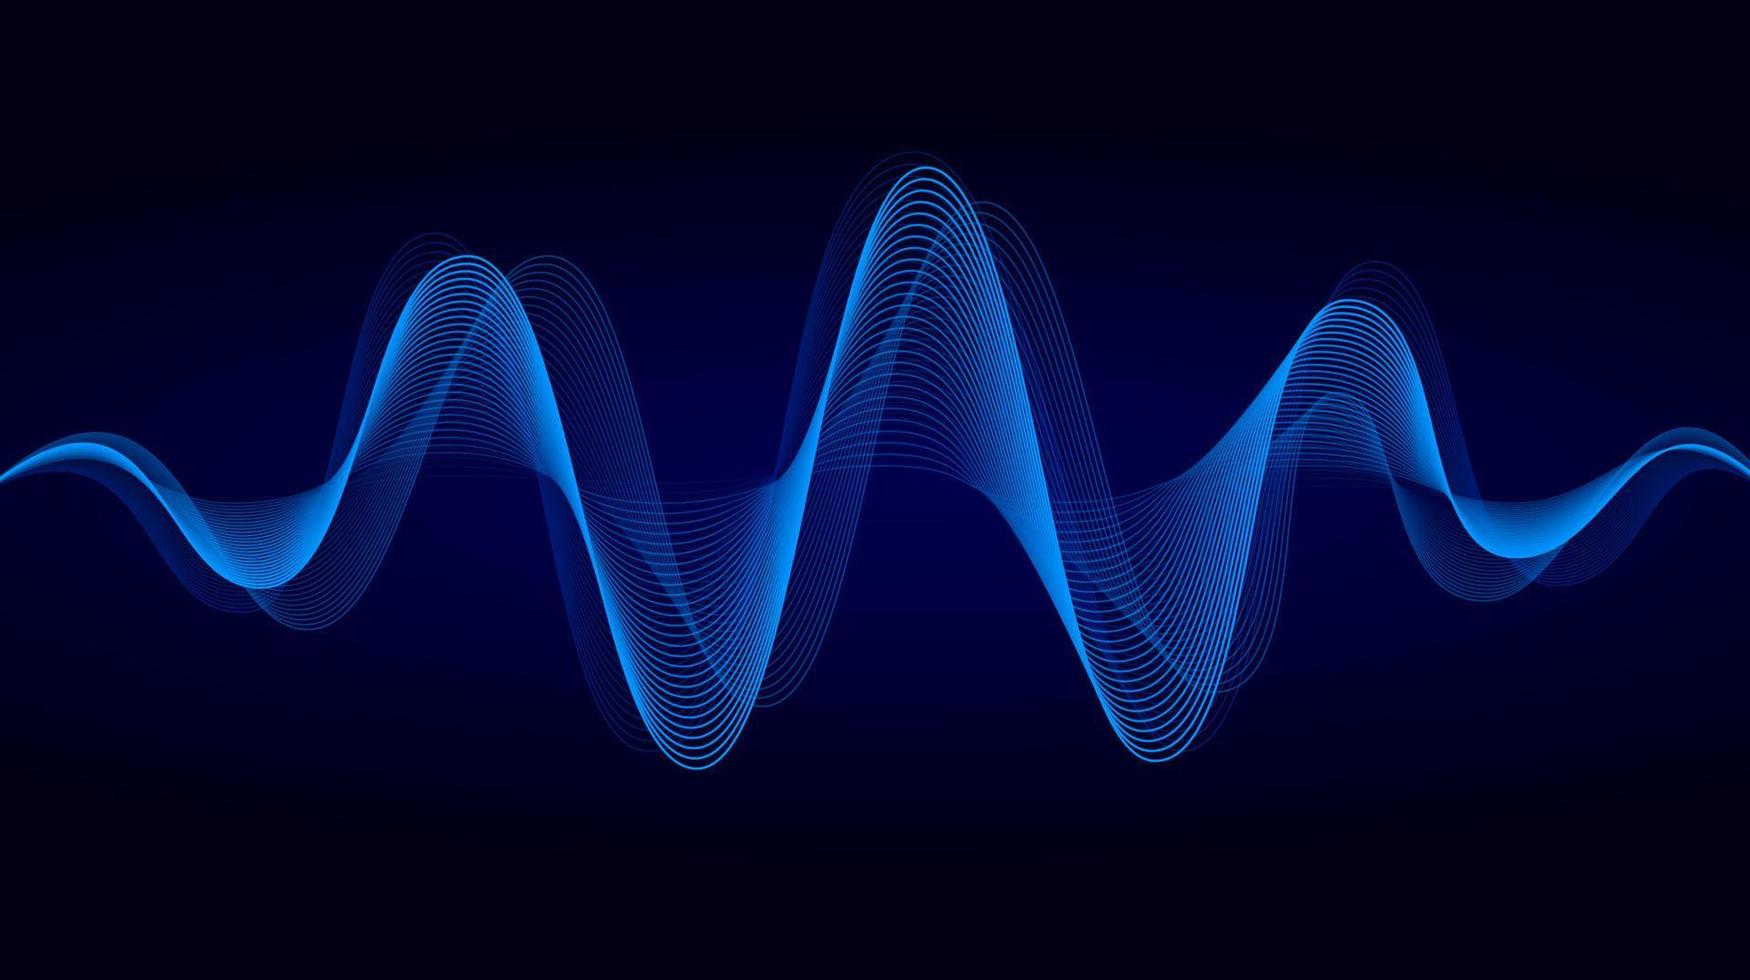 conception de lumière de lignes fluides dynamiques bleues abstraites. fond d'onde sonore. illustration vectorielle de musique, concept technologique vecteur